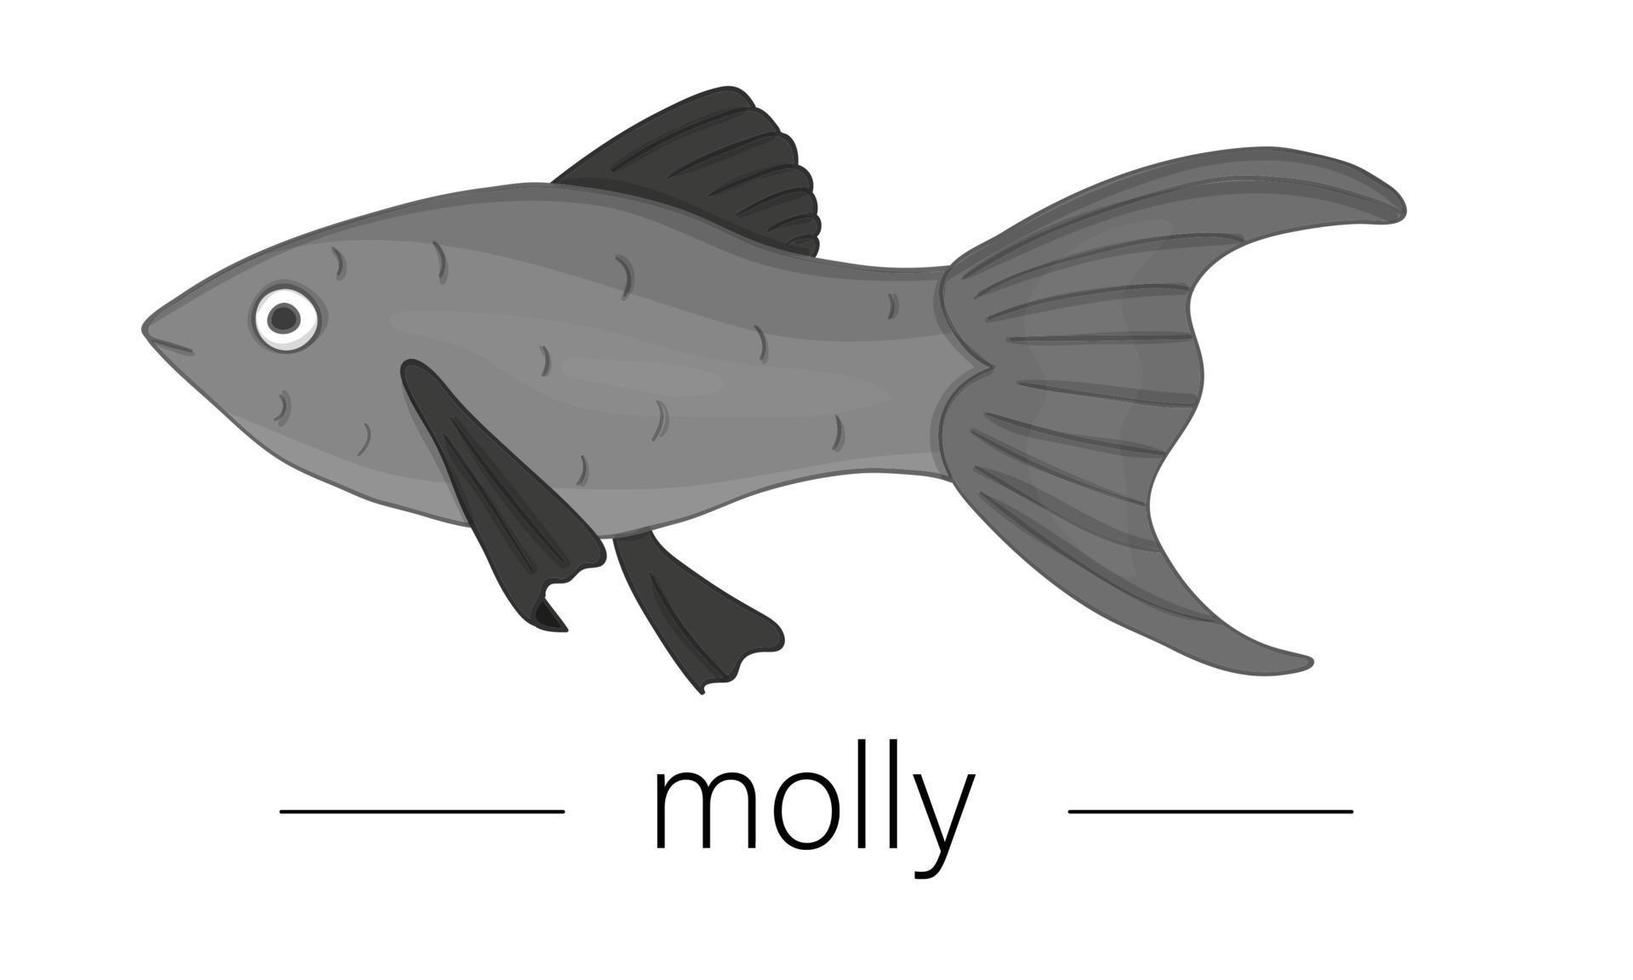 ilustração colorida do vetor de peixes de aquário. foto fofa de molly para lojas de animais ou ilustração infantil